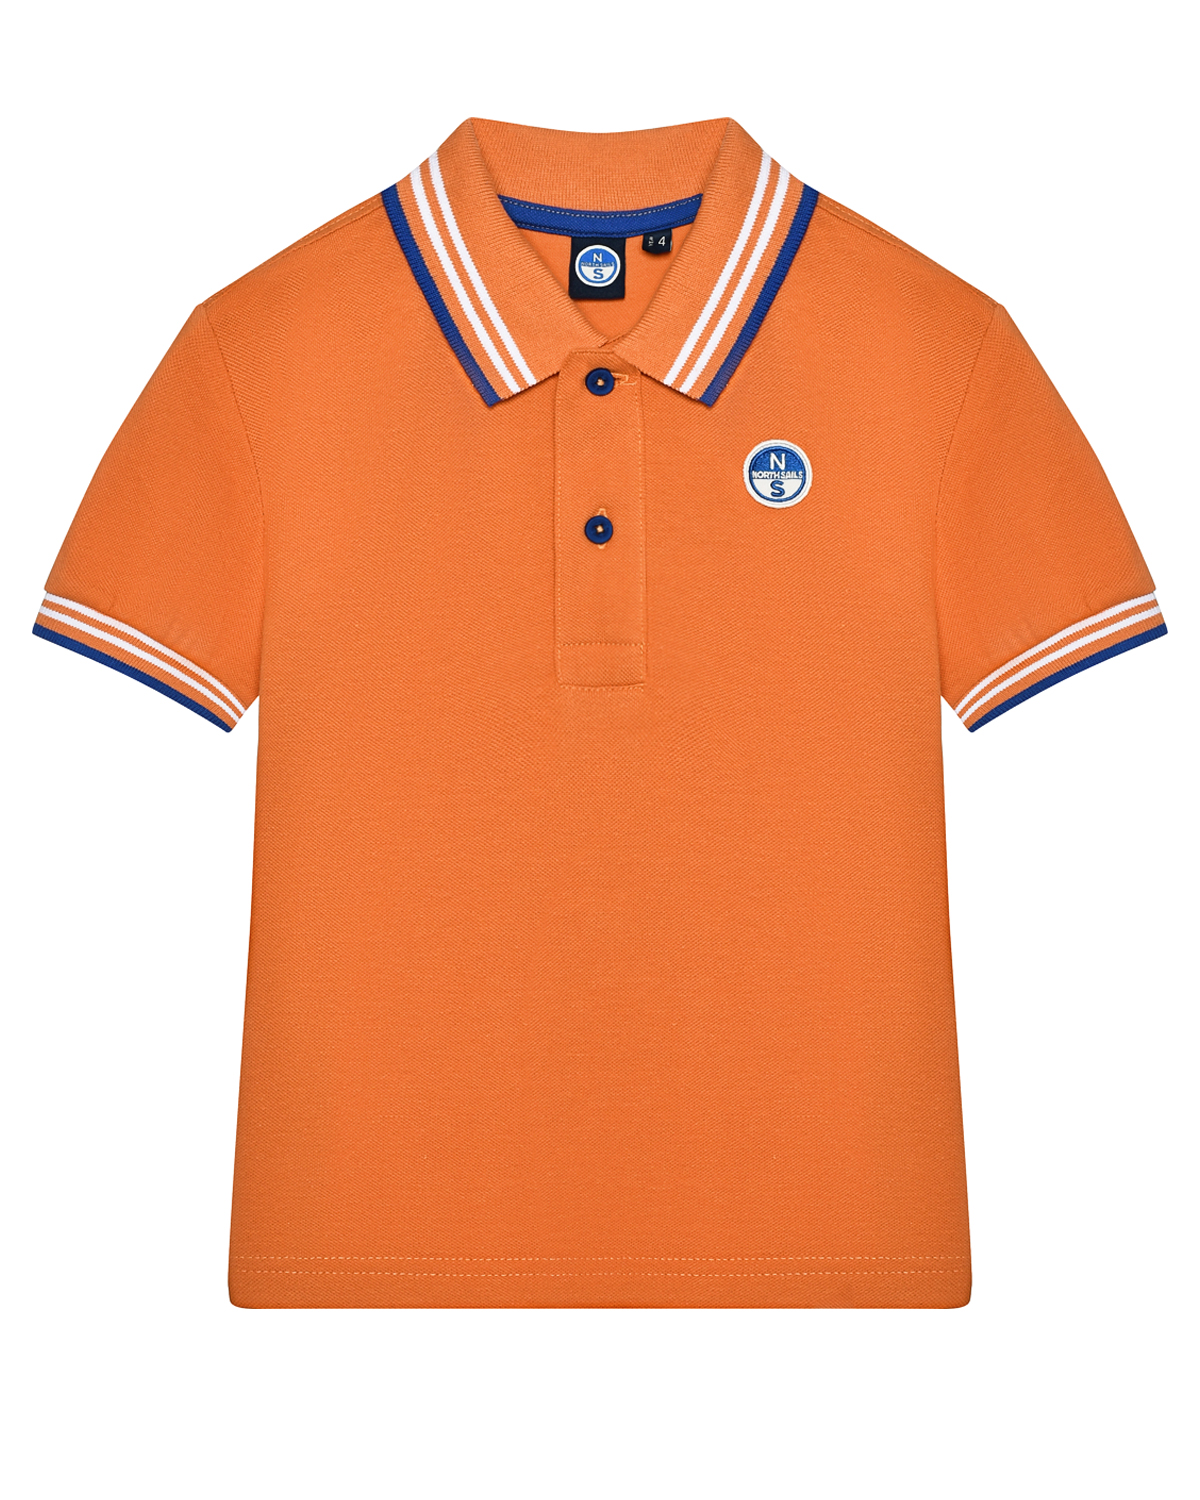 Футболка - поло с логотипом, оранжевая NORTH SAILS